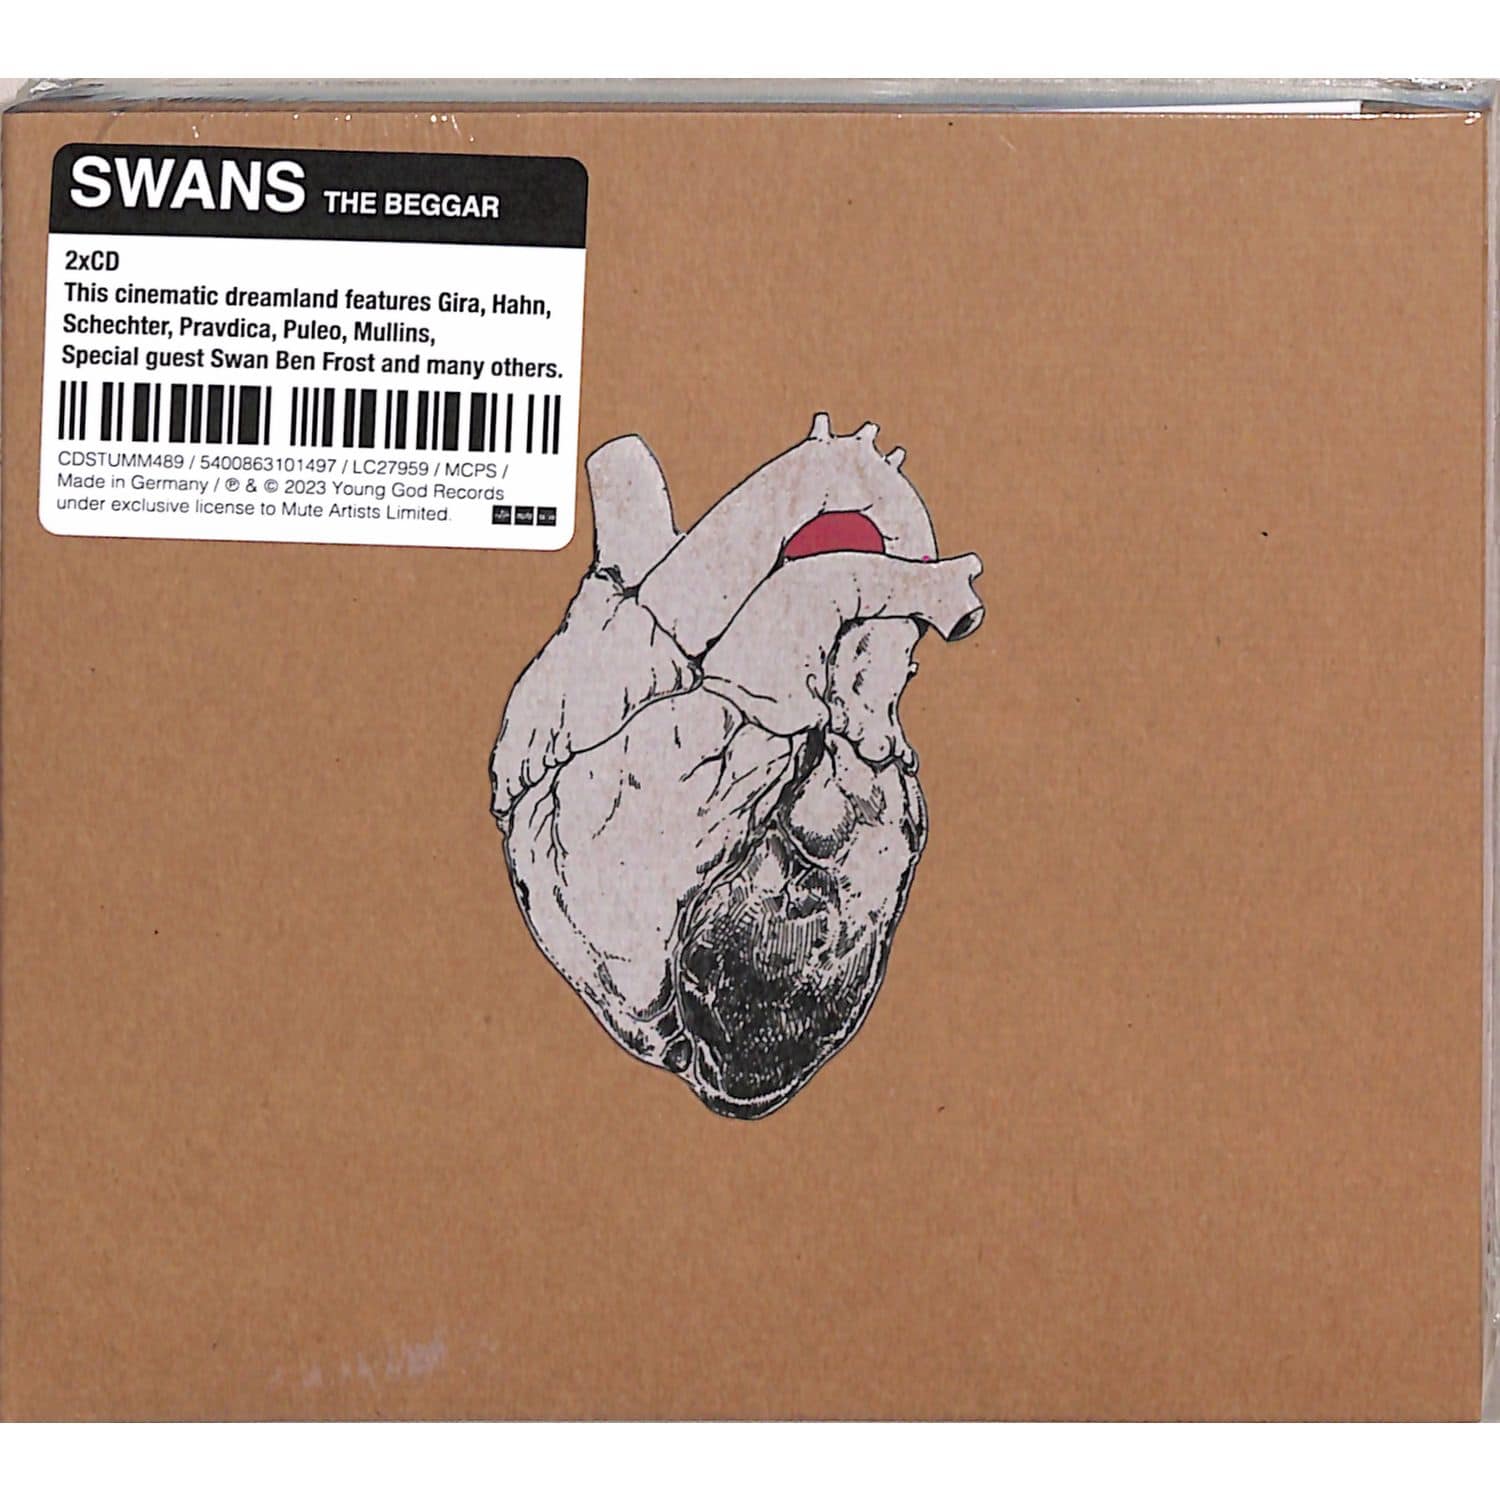 Swans - THE BEGGAR 